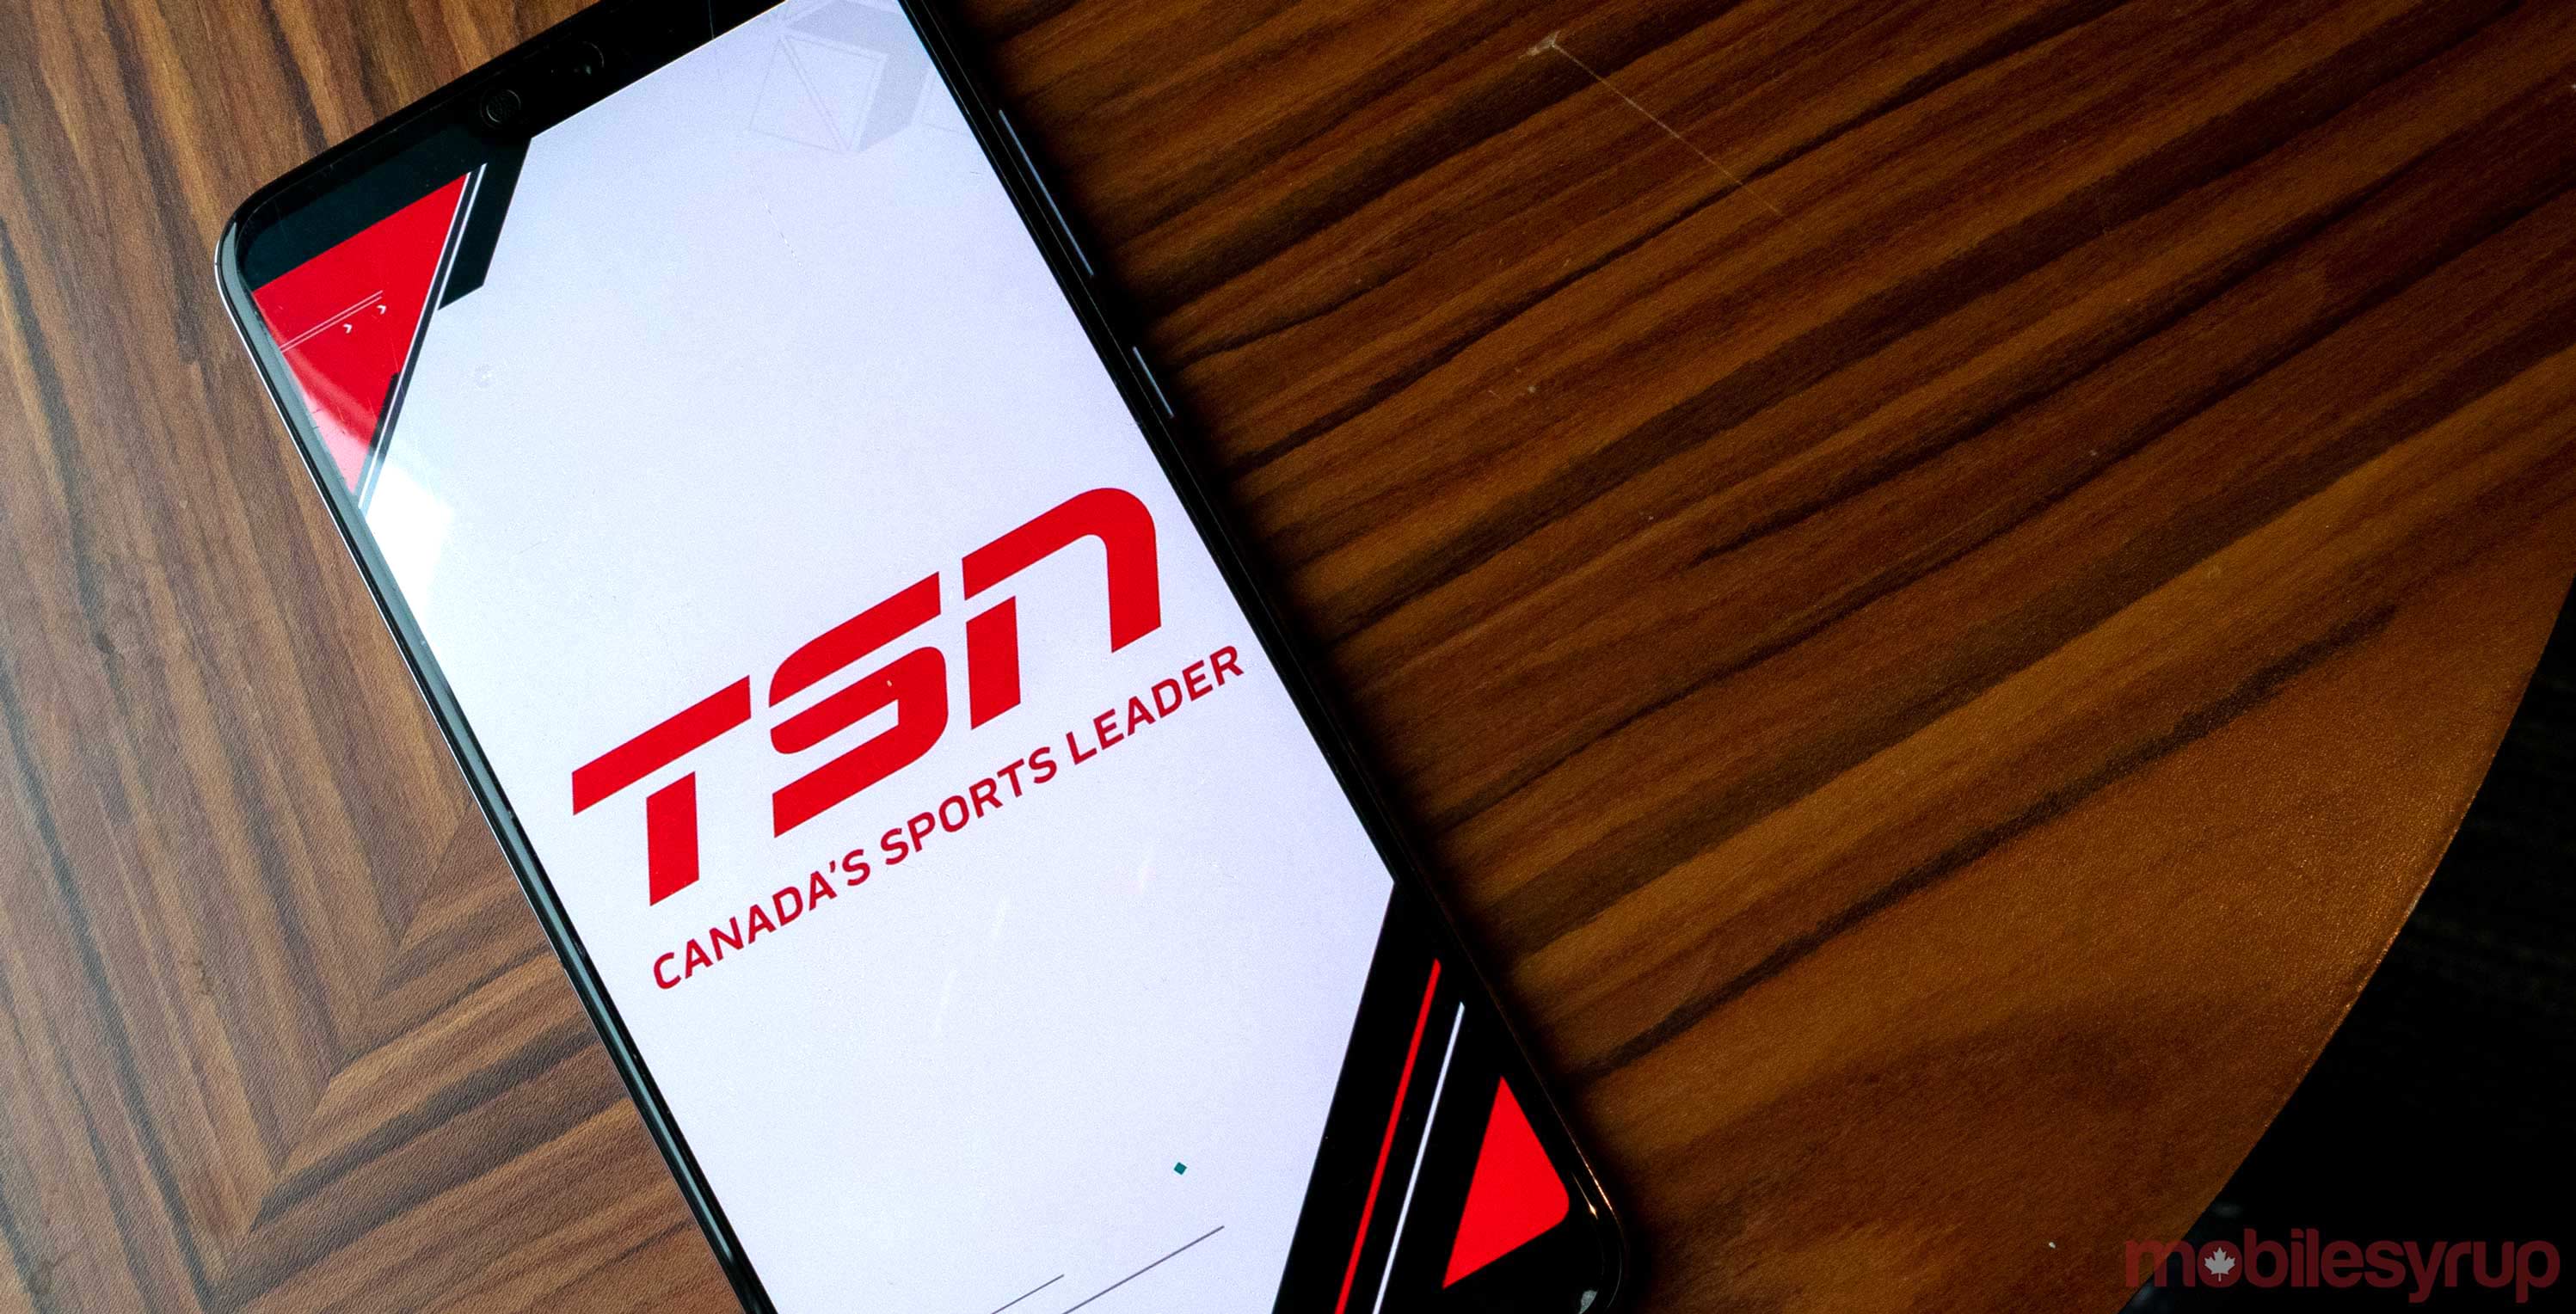 TSN offering new 24-hour streaming memberships for $4.99